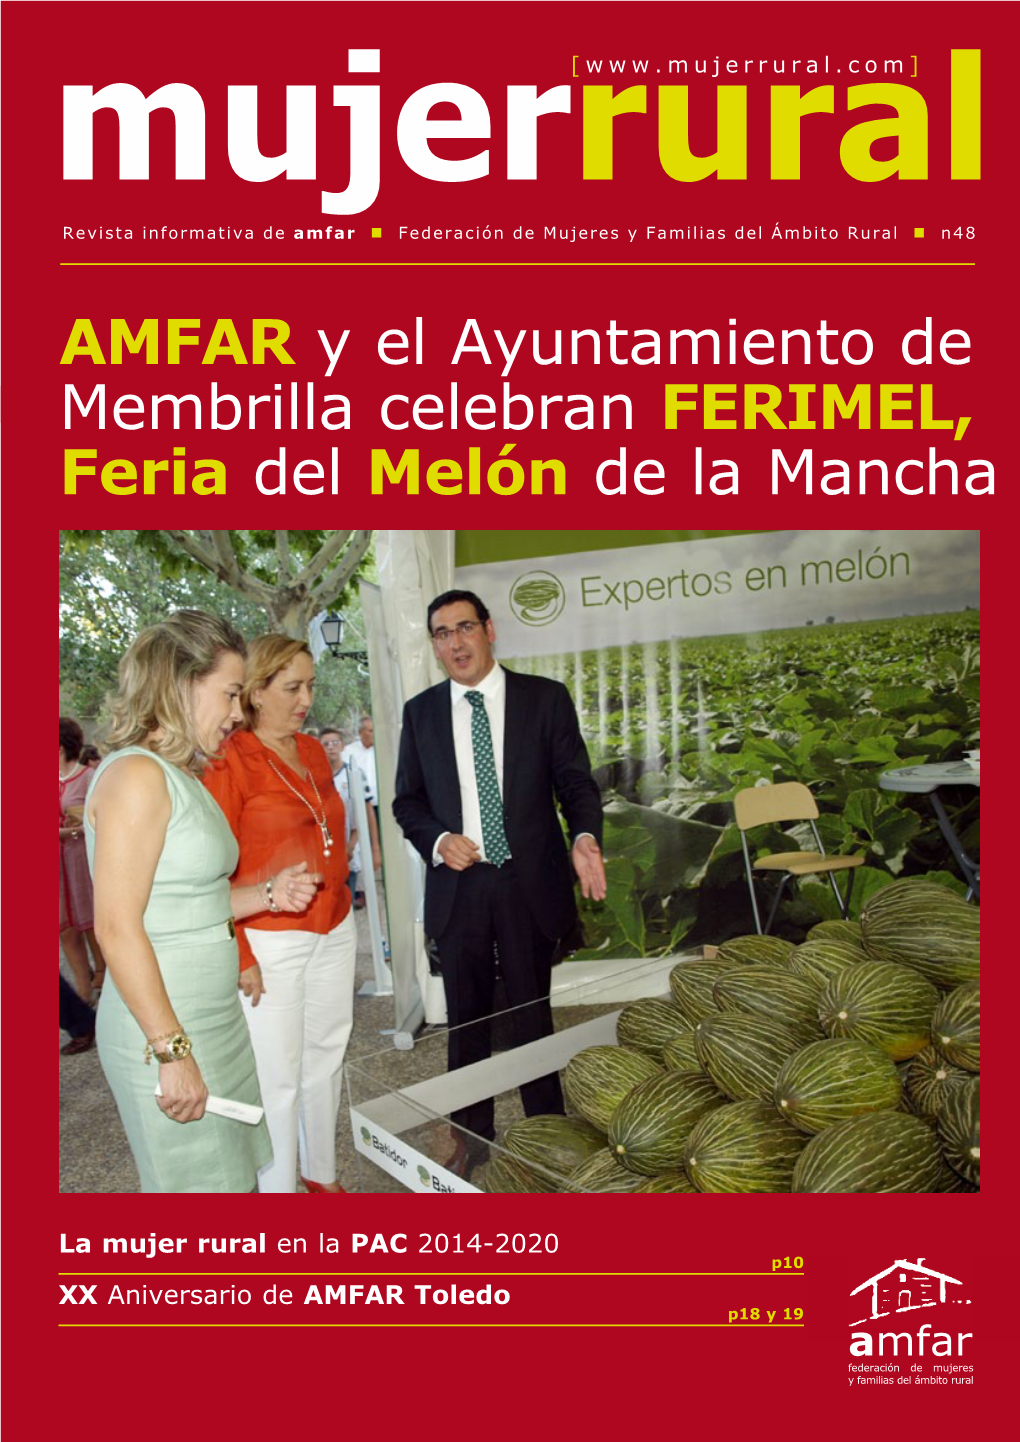 AMFAR Y El Ayuntamiento De Membrilla Celebran FERIMEL, Feria Del Melón De La Mancha